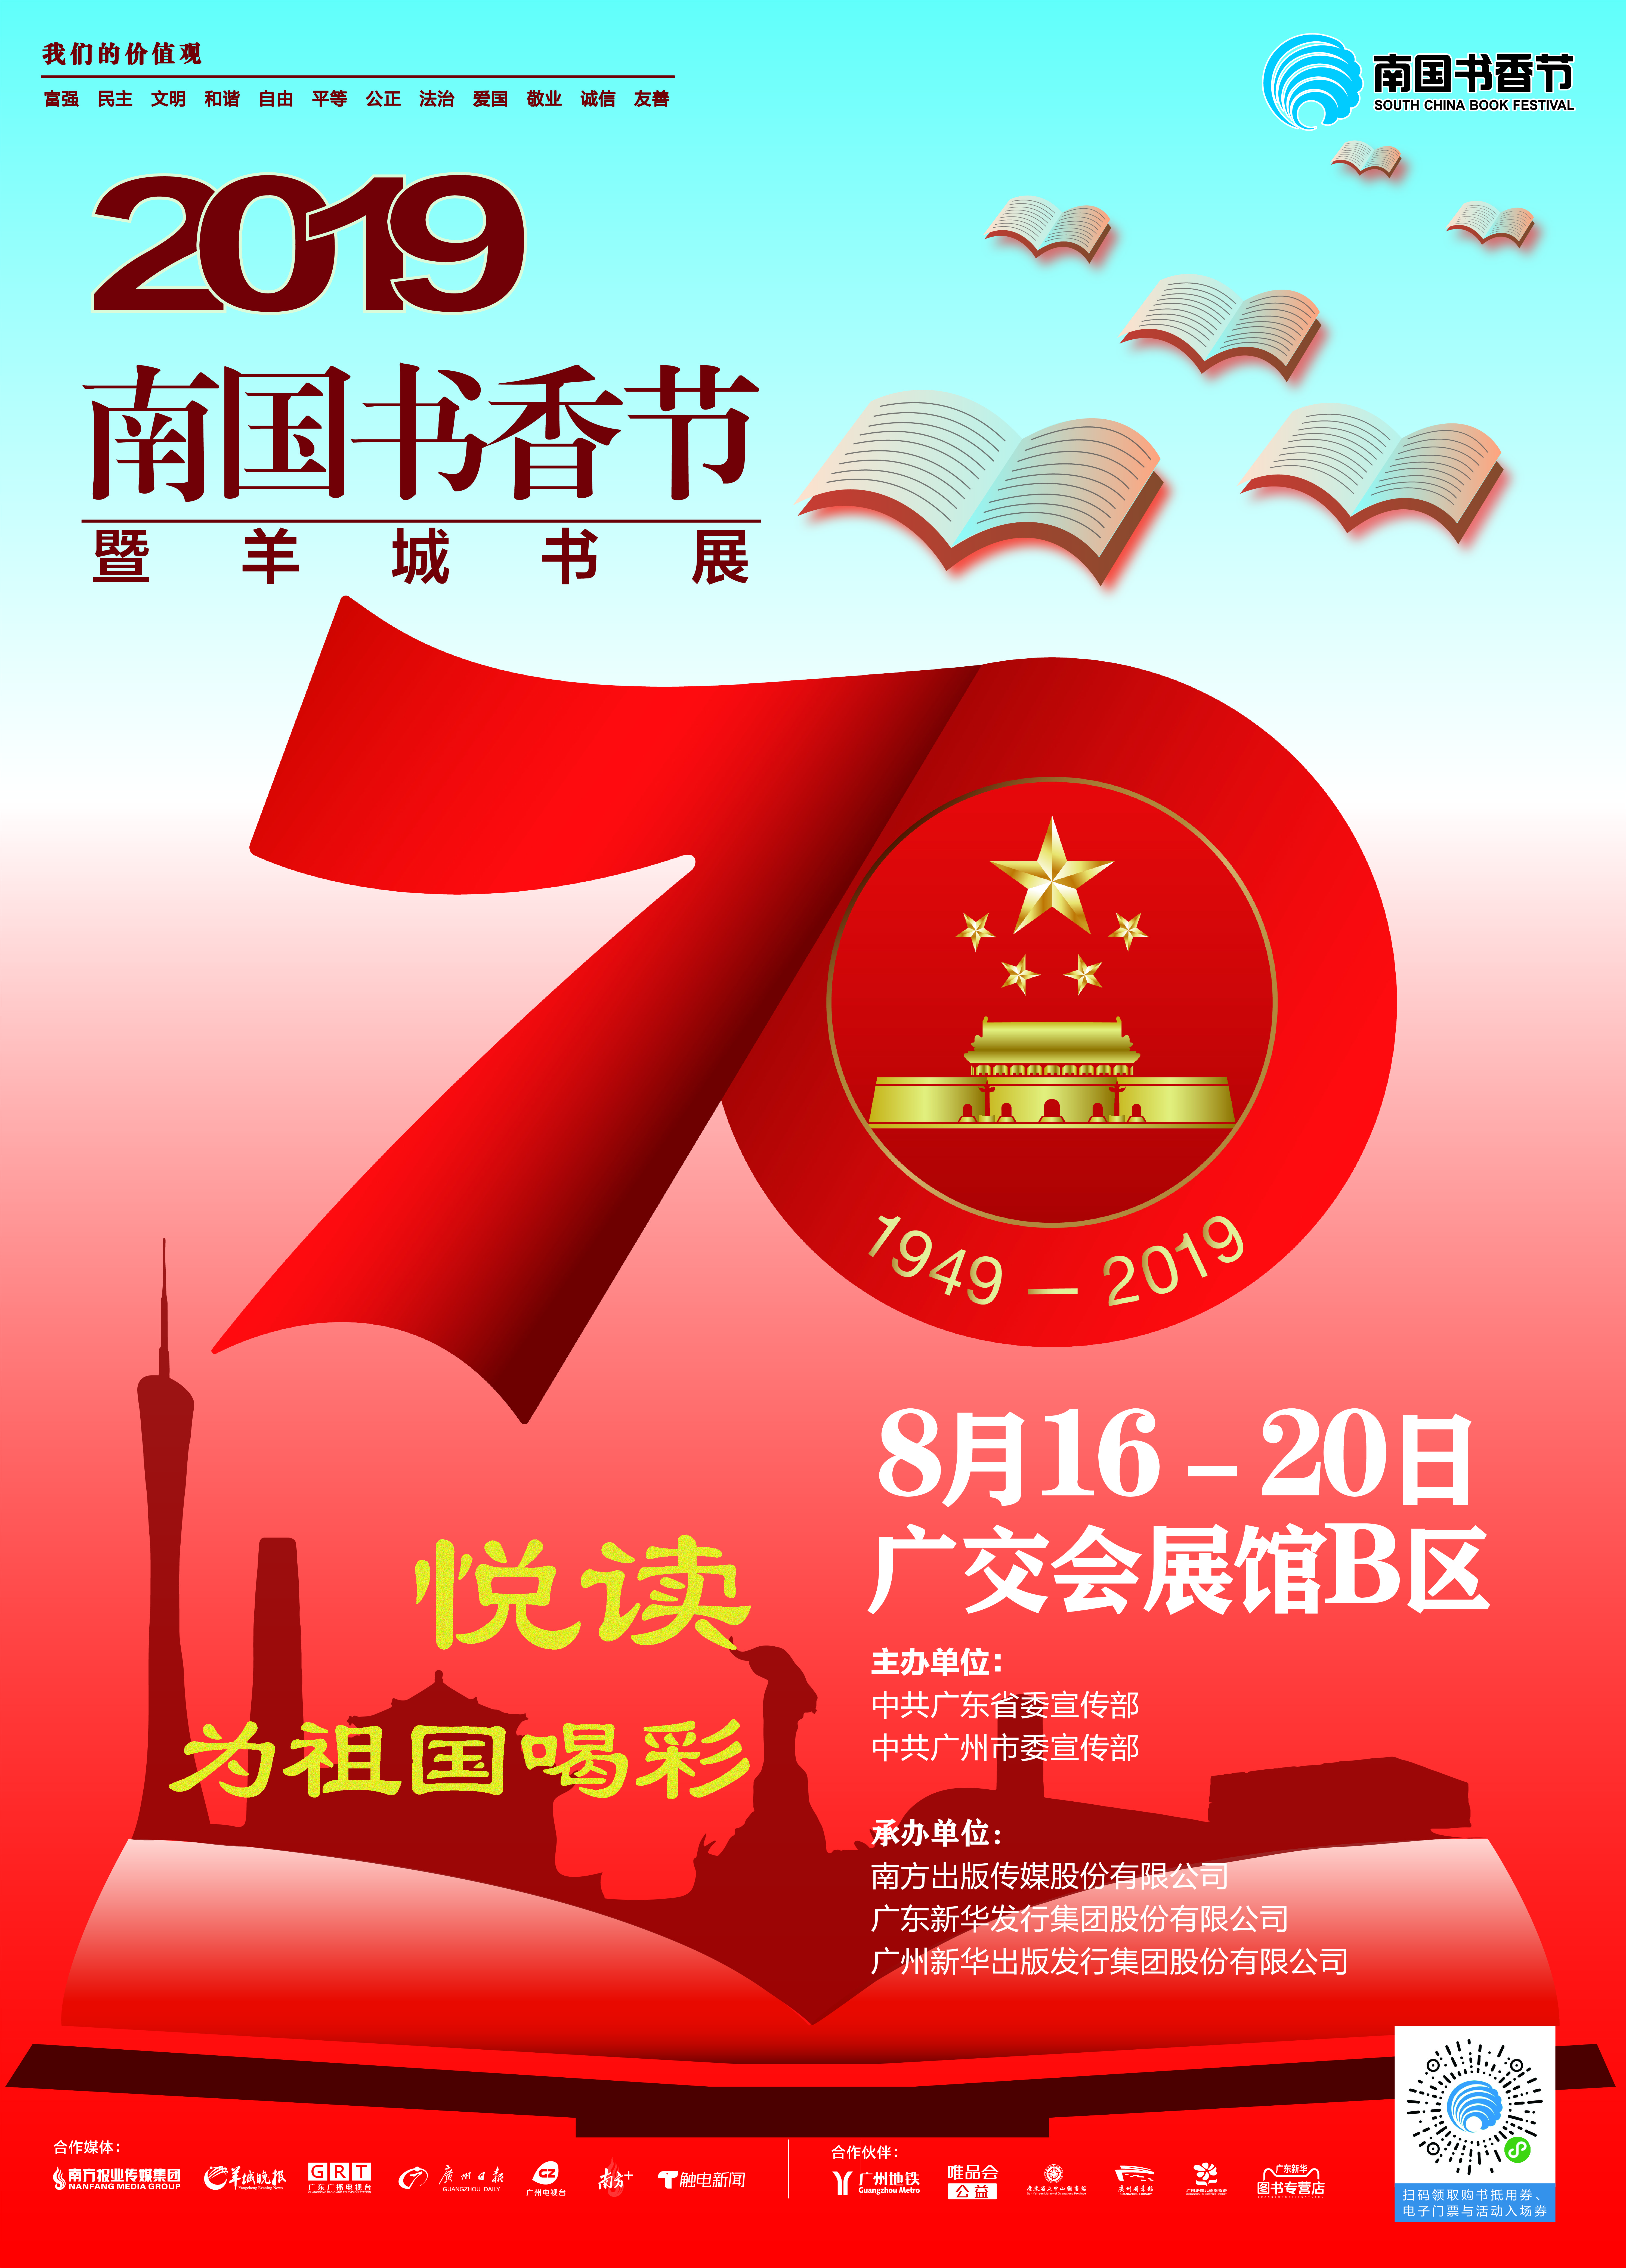 2019南国书香节暨羊城书展活动时间表